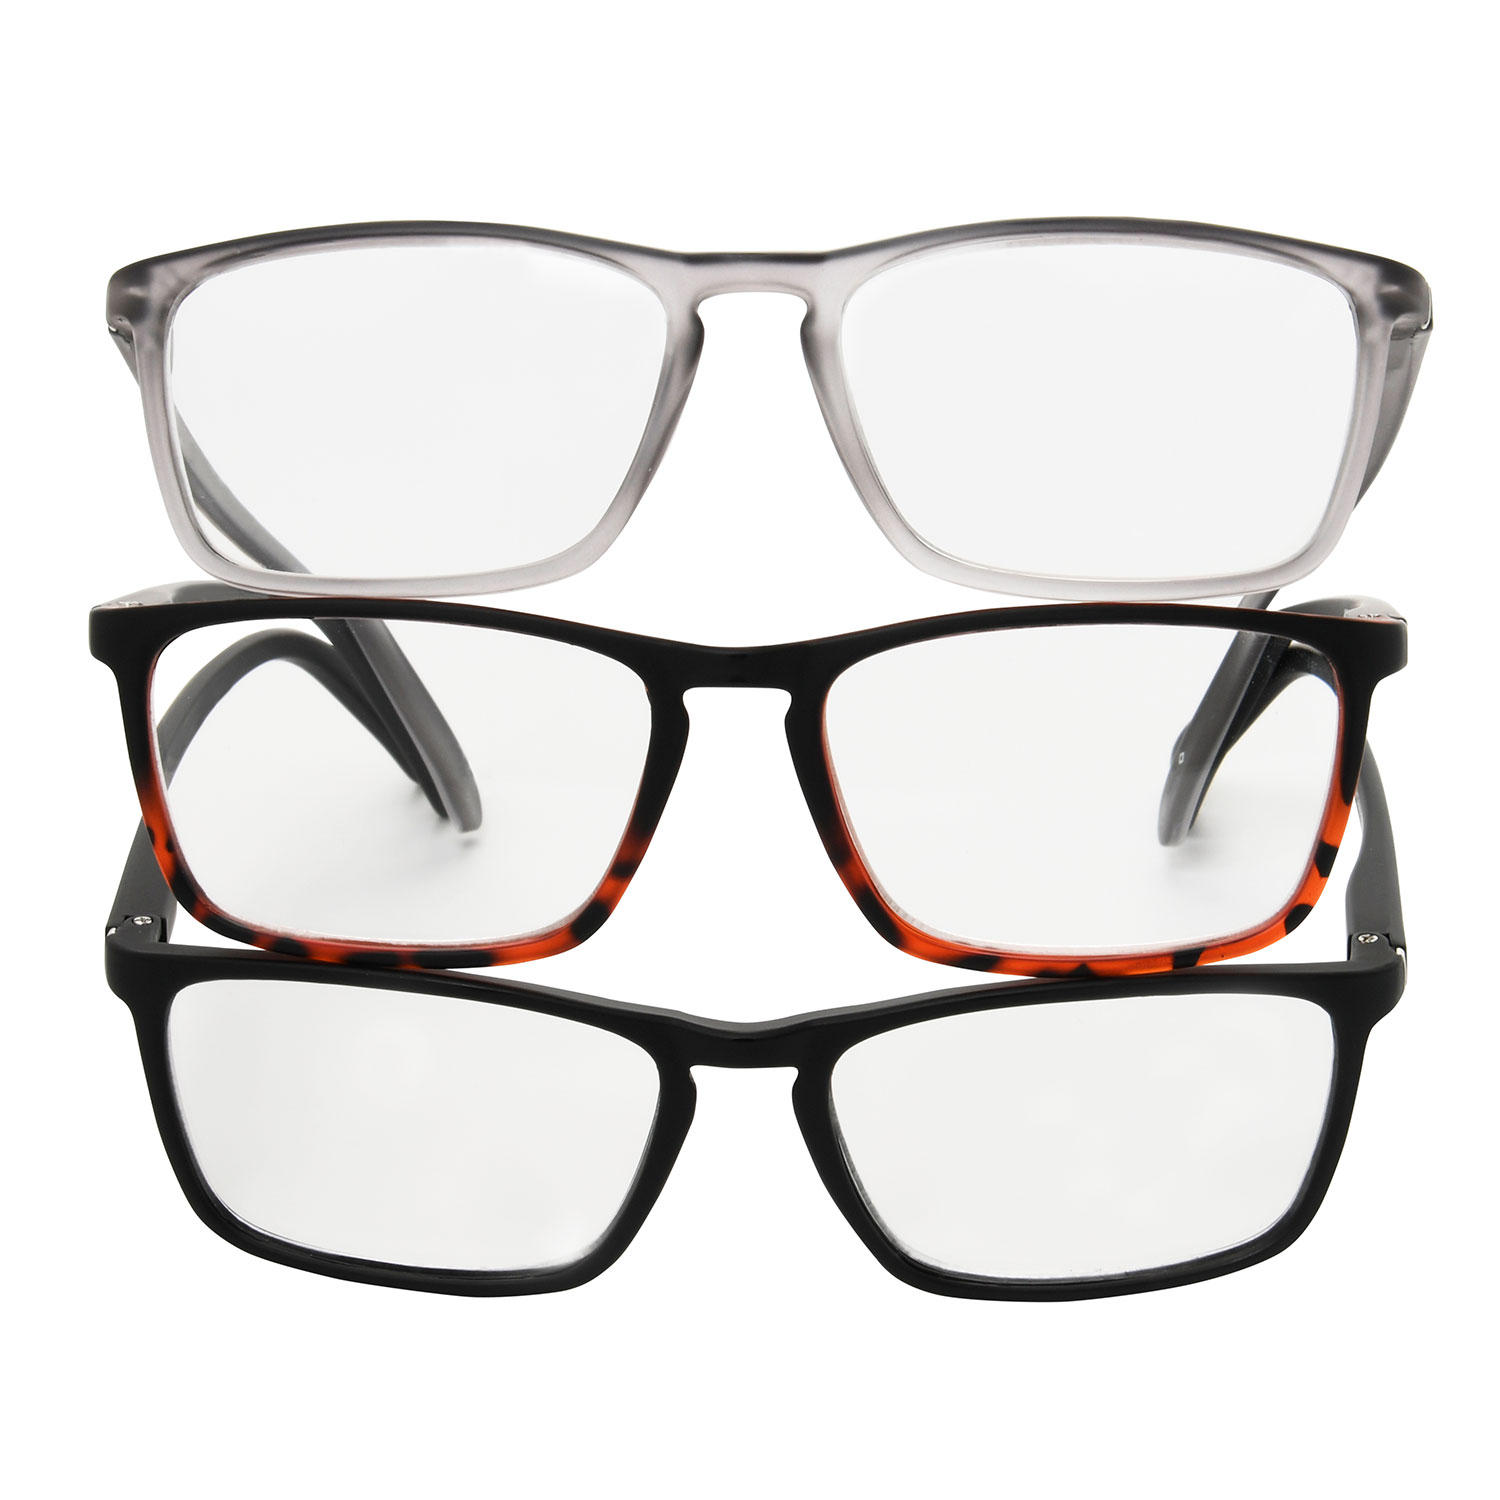 MEMBERS MARK Rectangular Reading Glasses (3 pack)